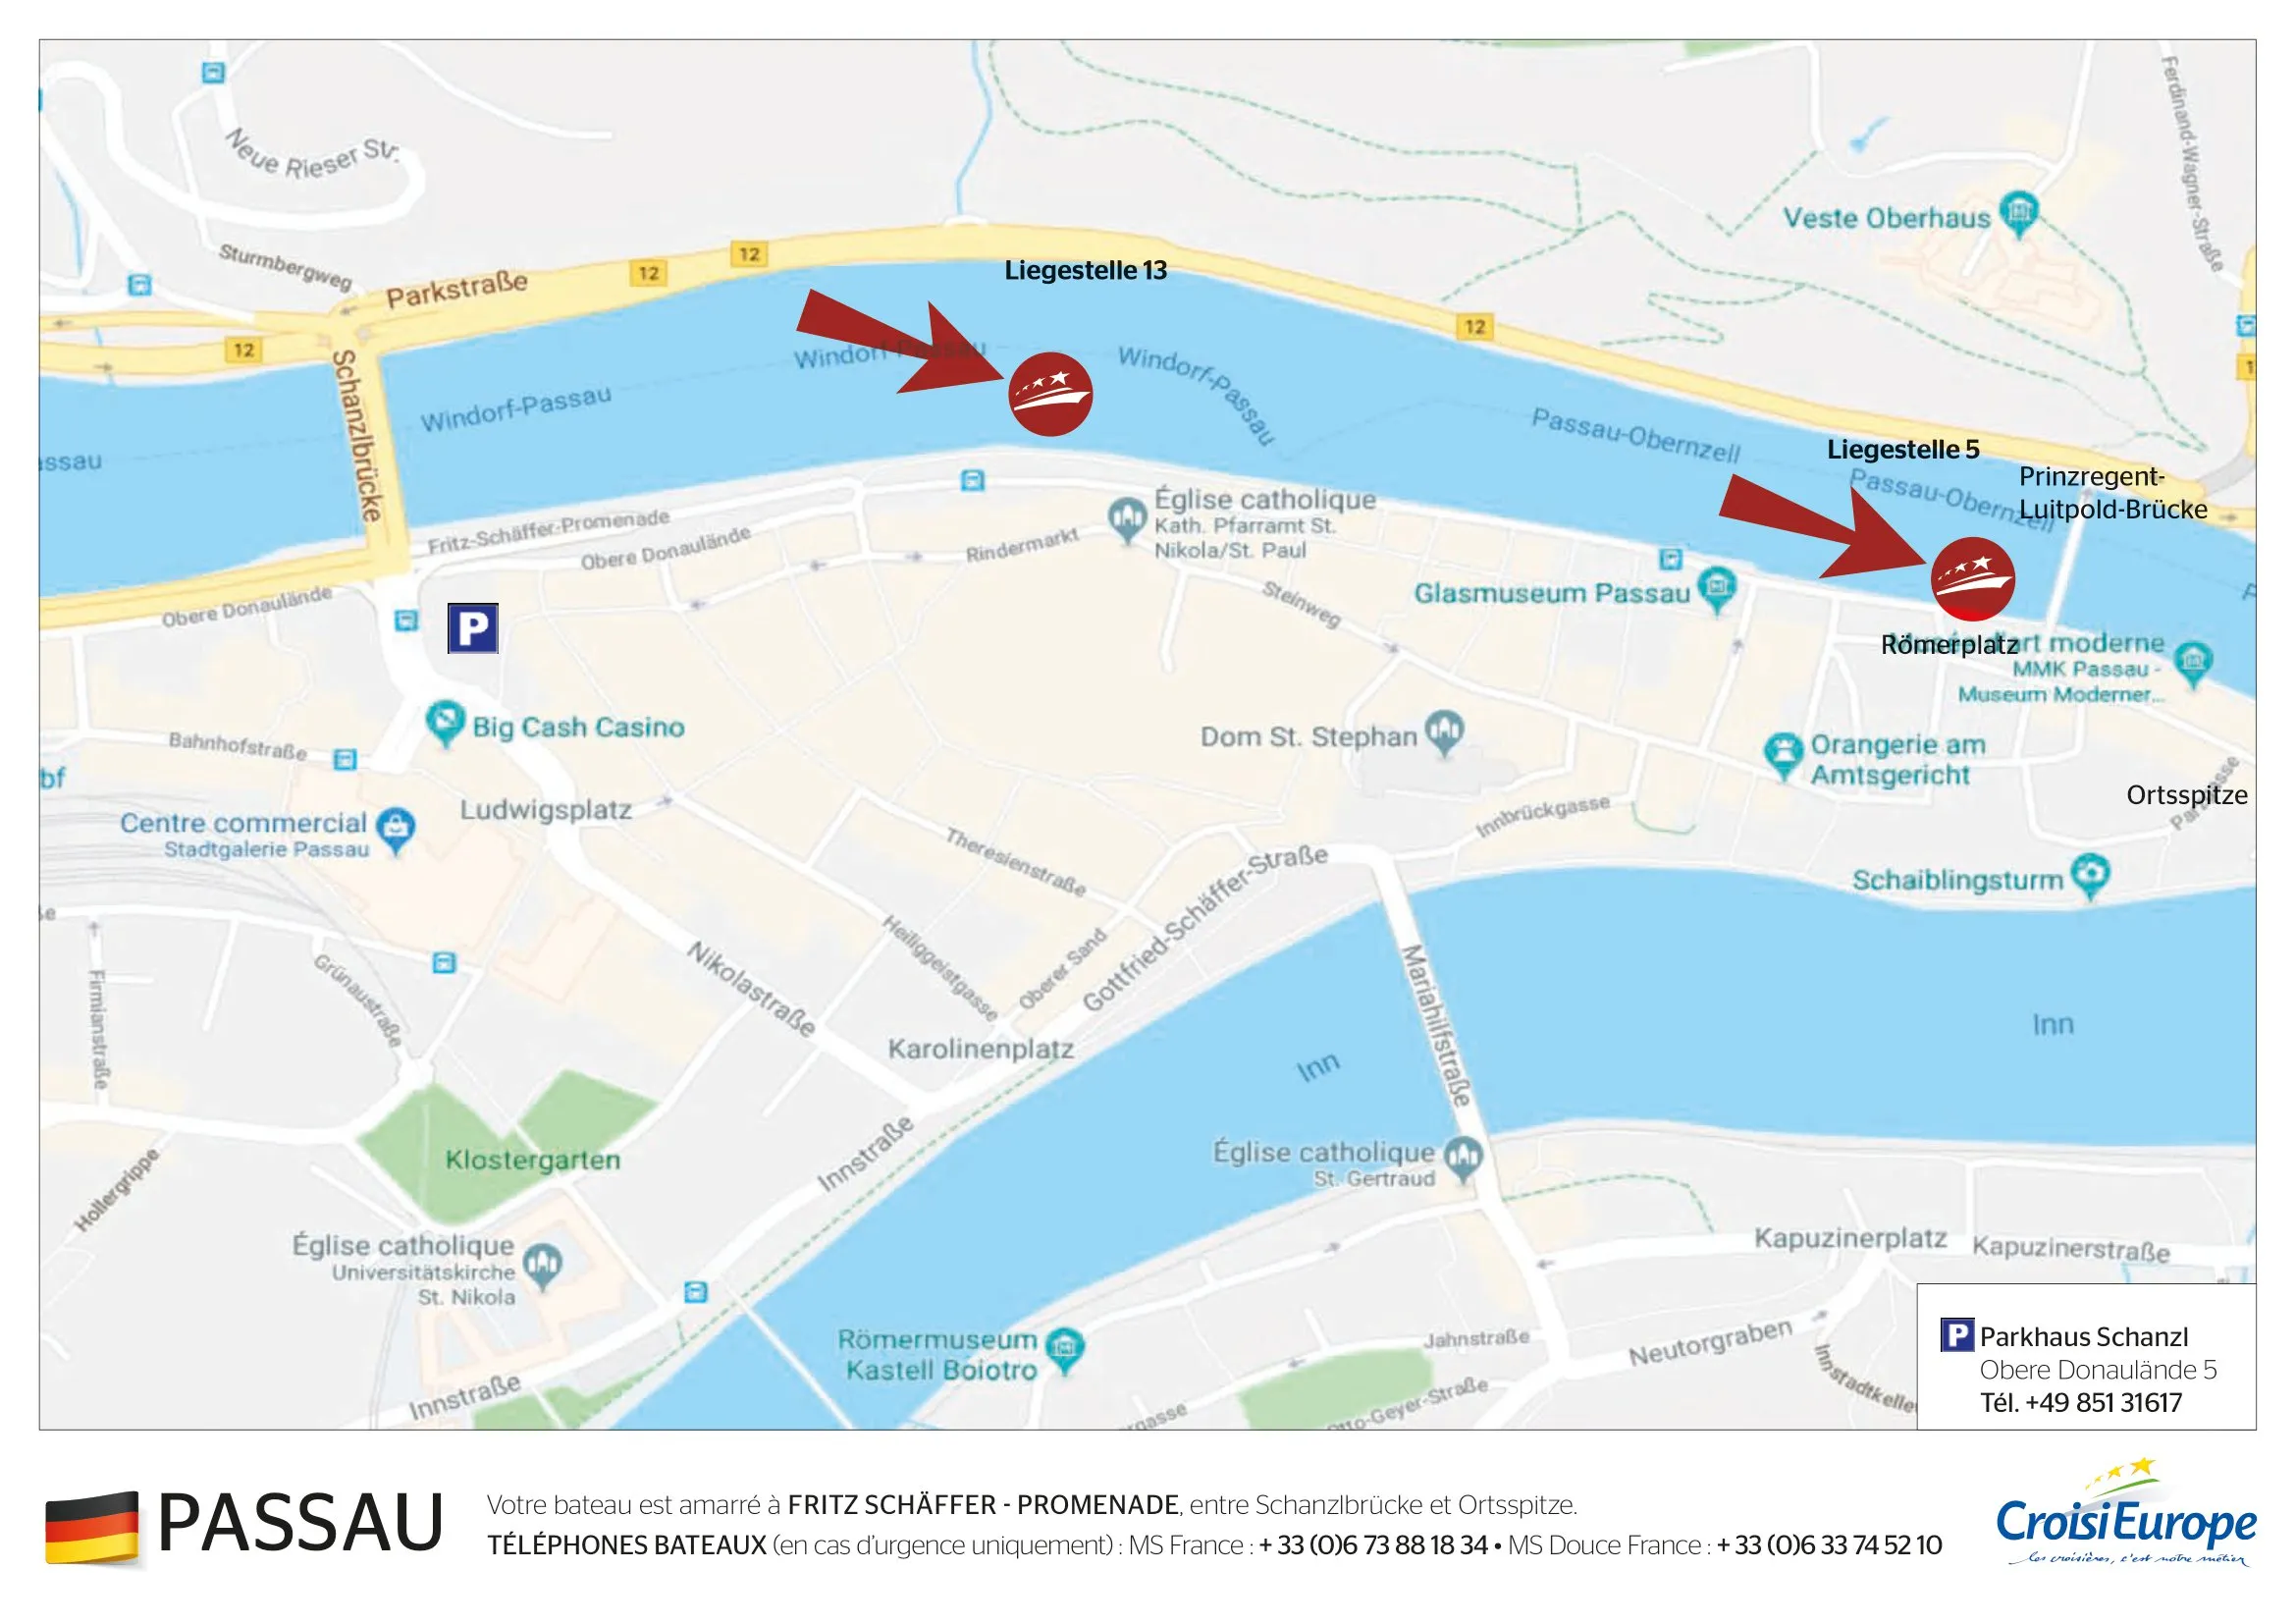 Plan d'embarquement Passau 